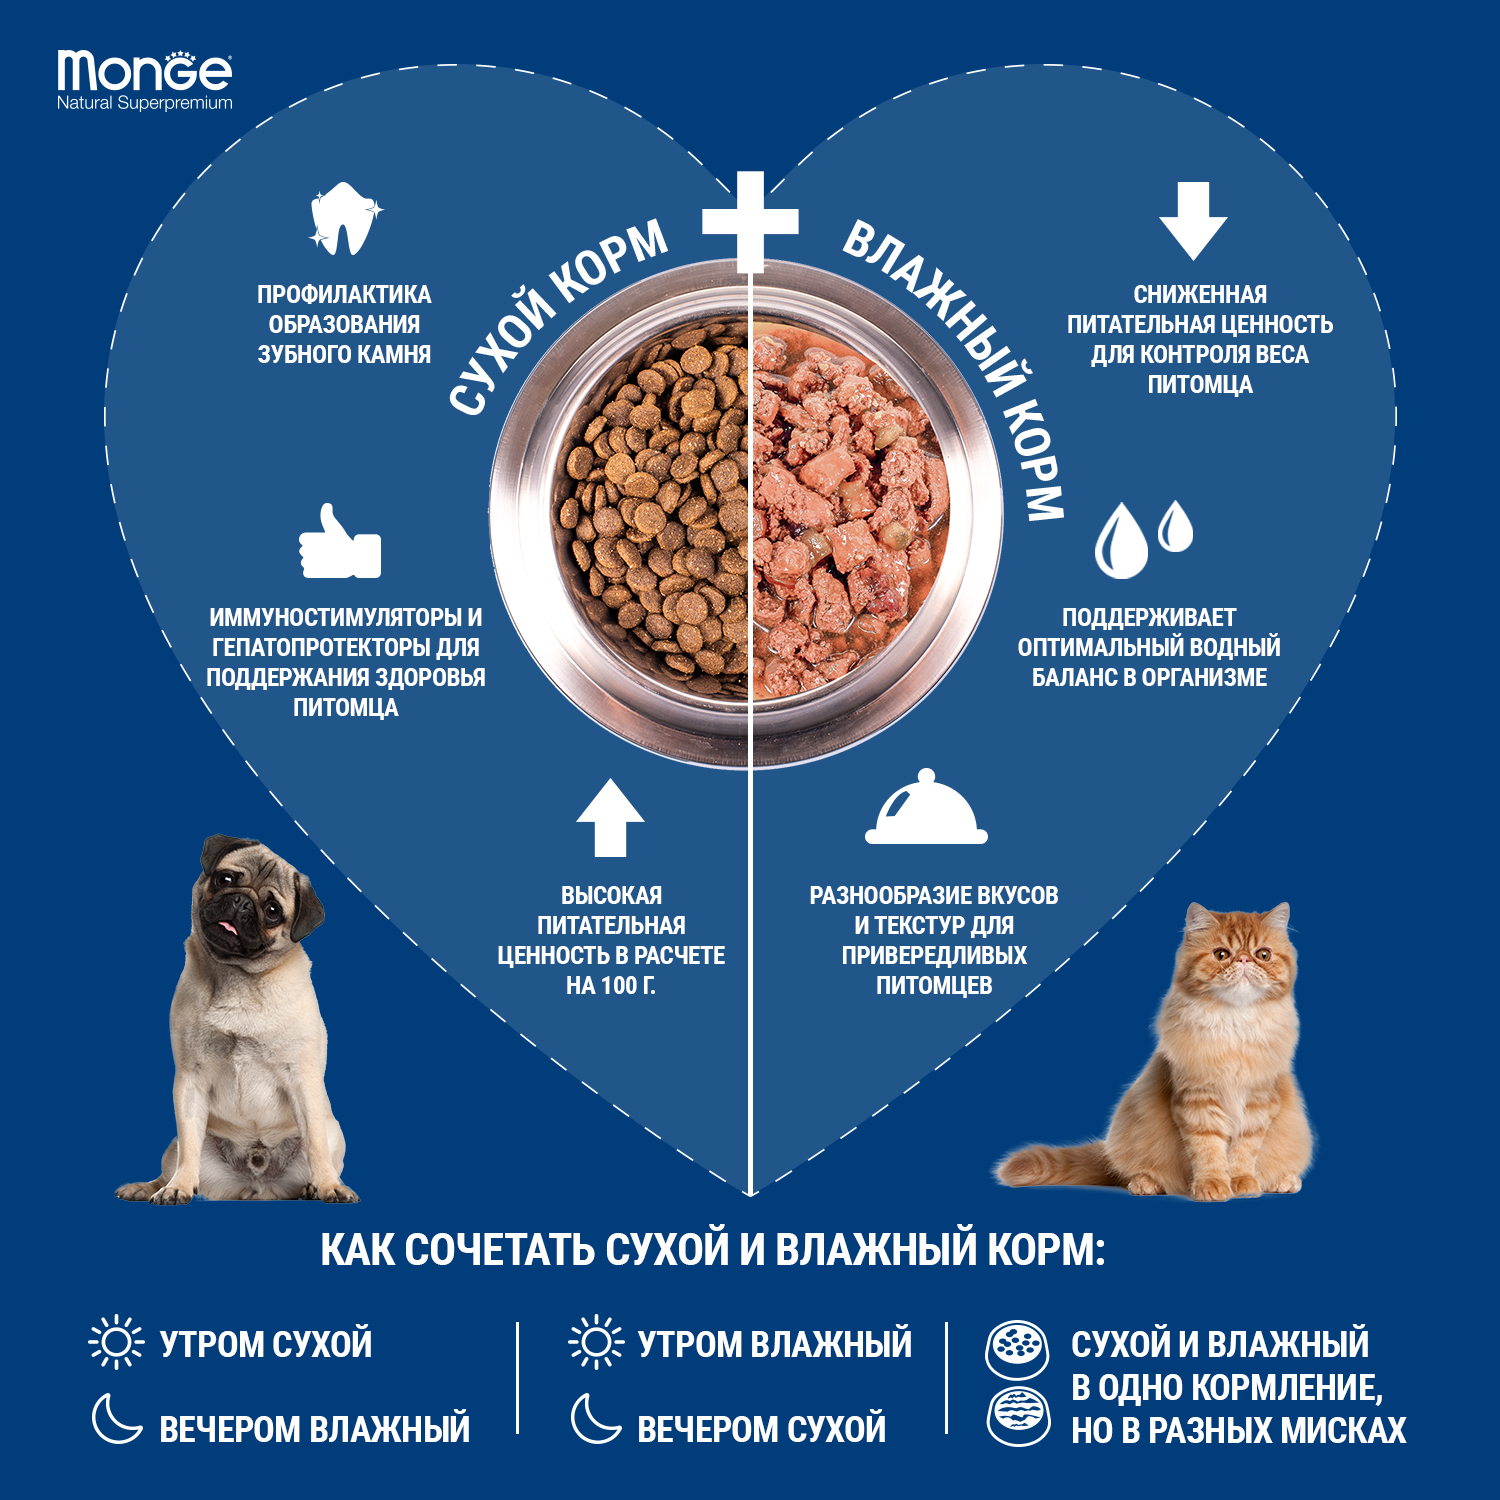 Сухой корм Monge Dog Speciality Line Monoprotein Puppy & Junior для щенков всех пород, из говядины с рисом 2,5 кг